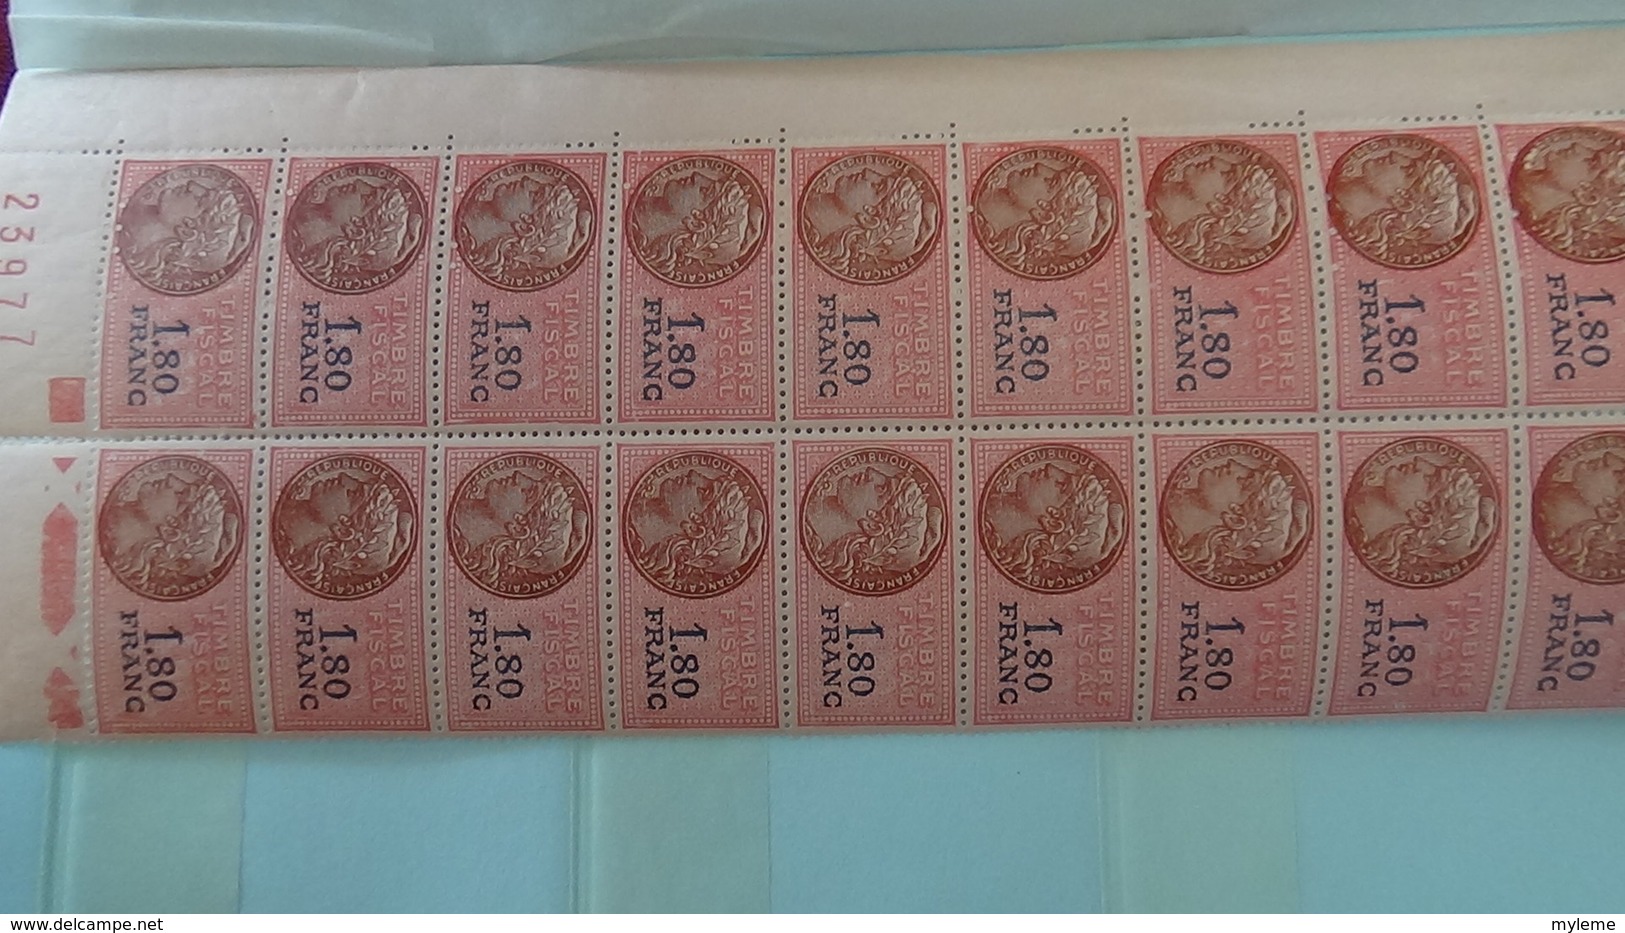 Carnet à choix avec 180 timbres fiscaux tous ** et coins datés. Pas commun !!!